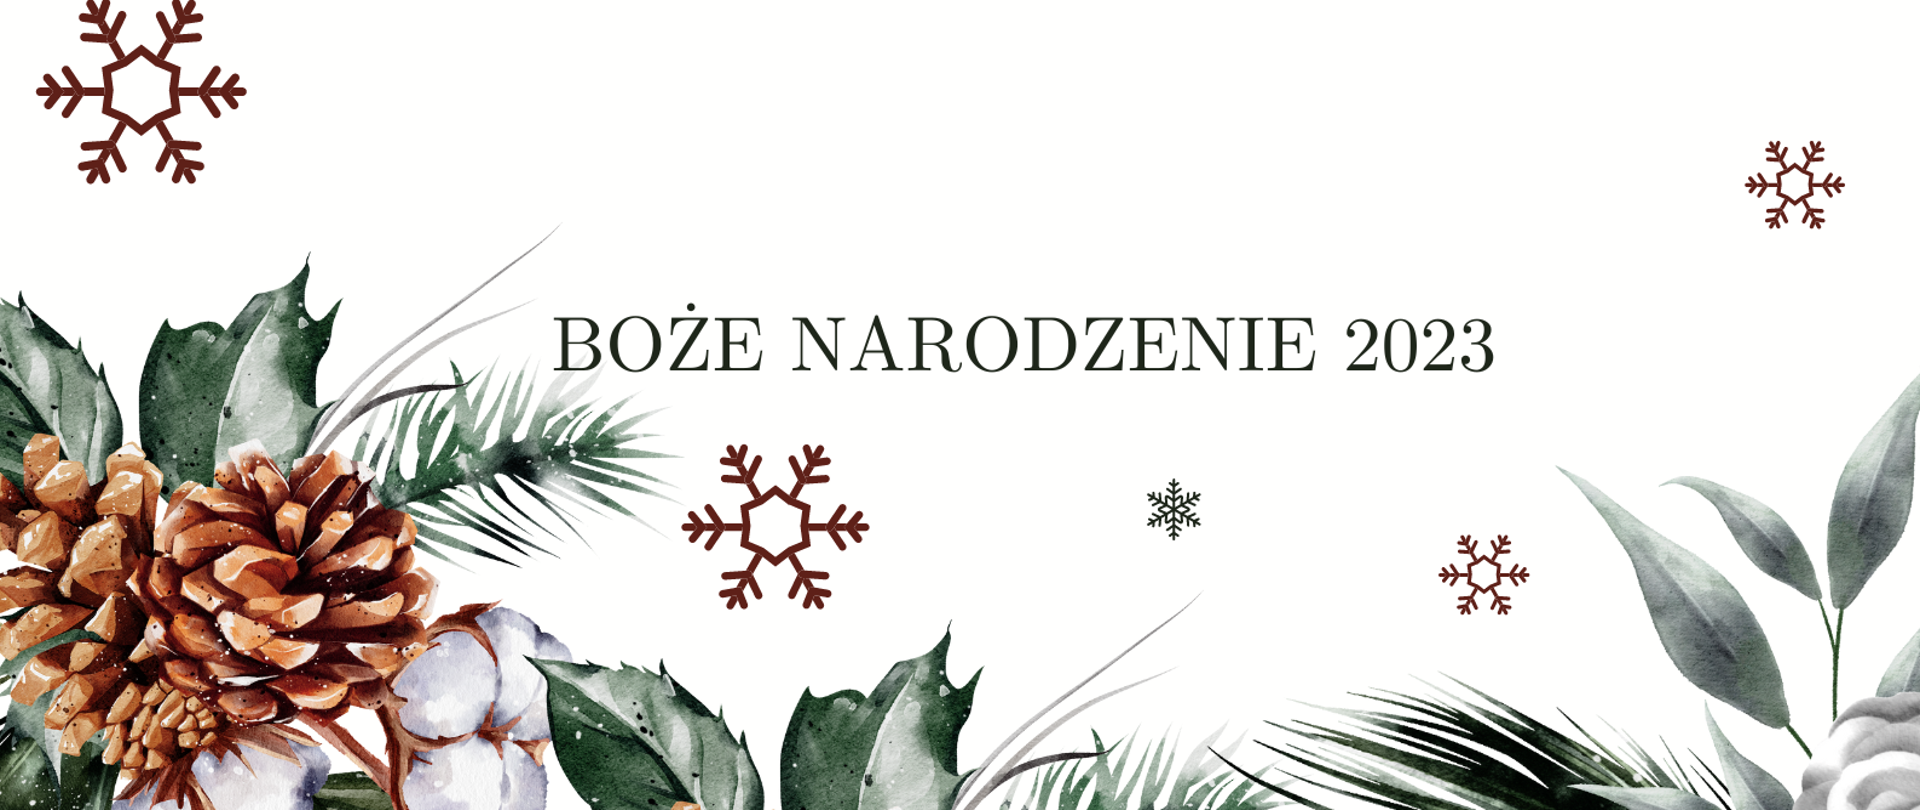 Zdjęcie przedstawia grafikę liści, brązowych szyszek oraz płatków śniegi na jasnym tle wraz z napisem Boże Narodzenie 2023 i życzeniami świątecznymi